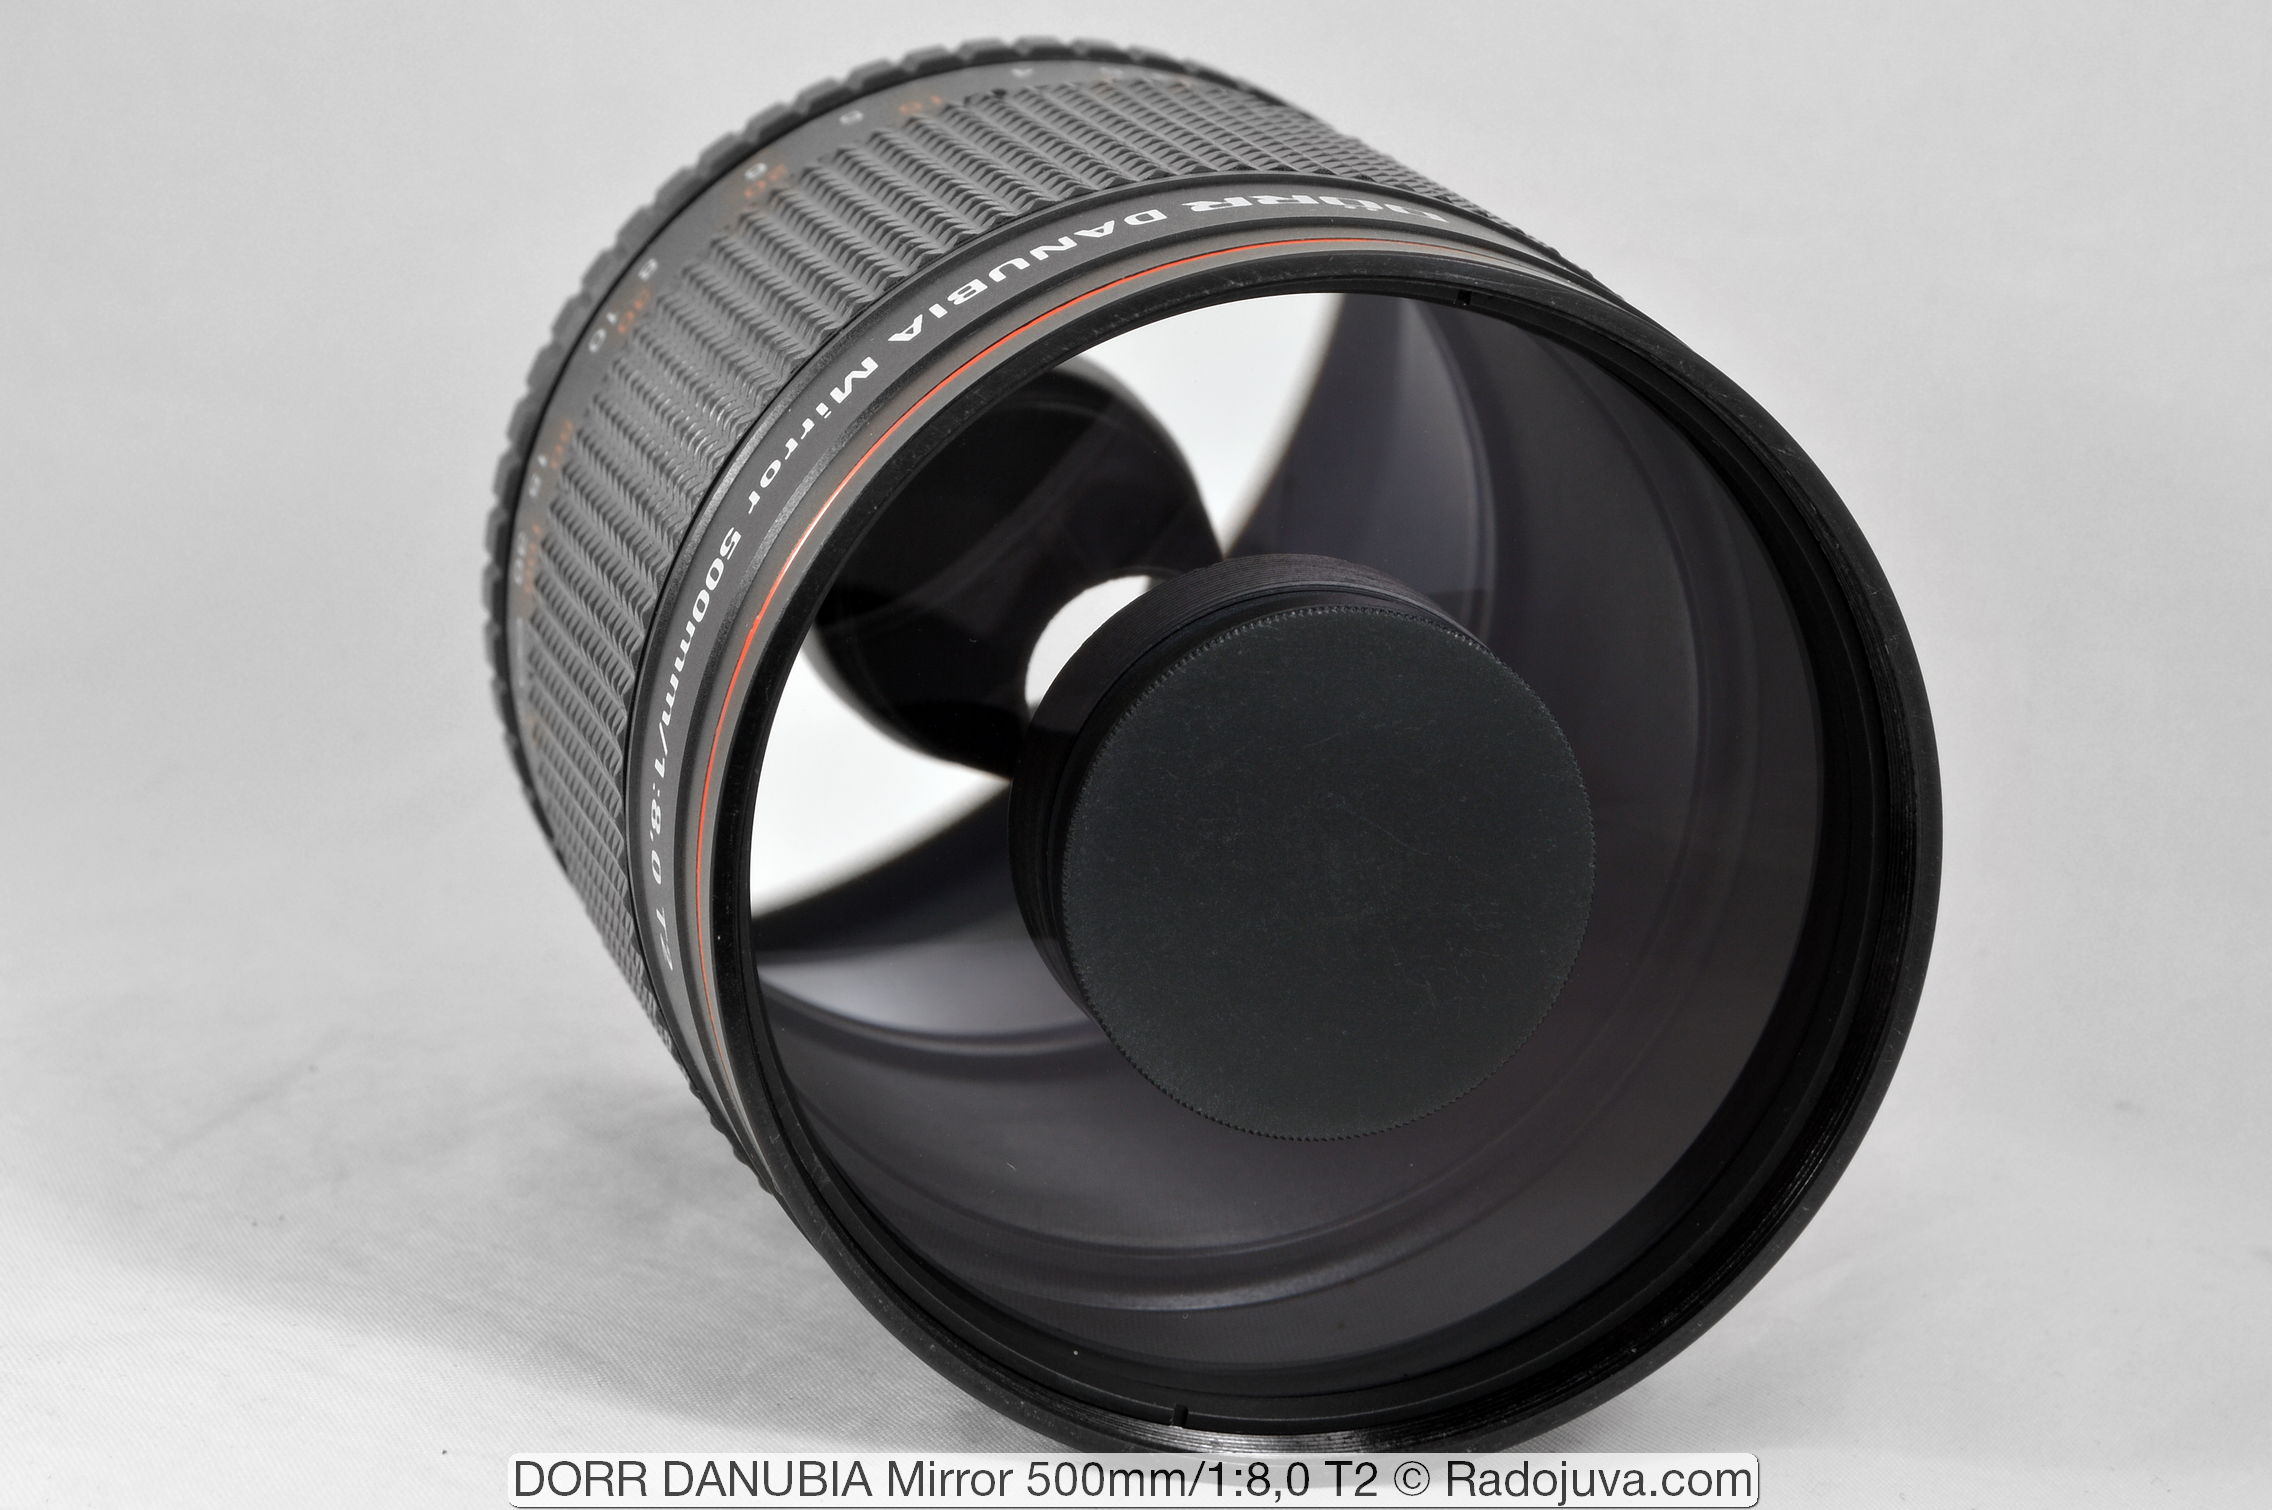 NEX Dörr Danubia teleobiettivo 500mm 8.0 t2 per Sony E-Mount a6000 